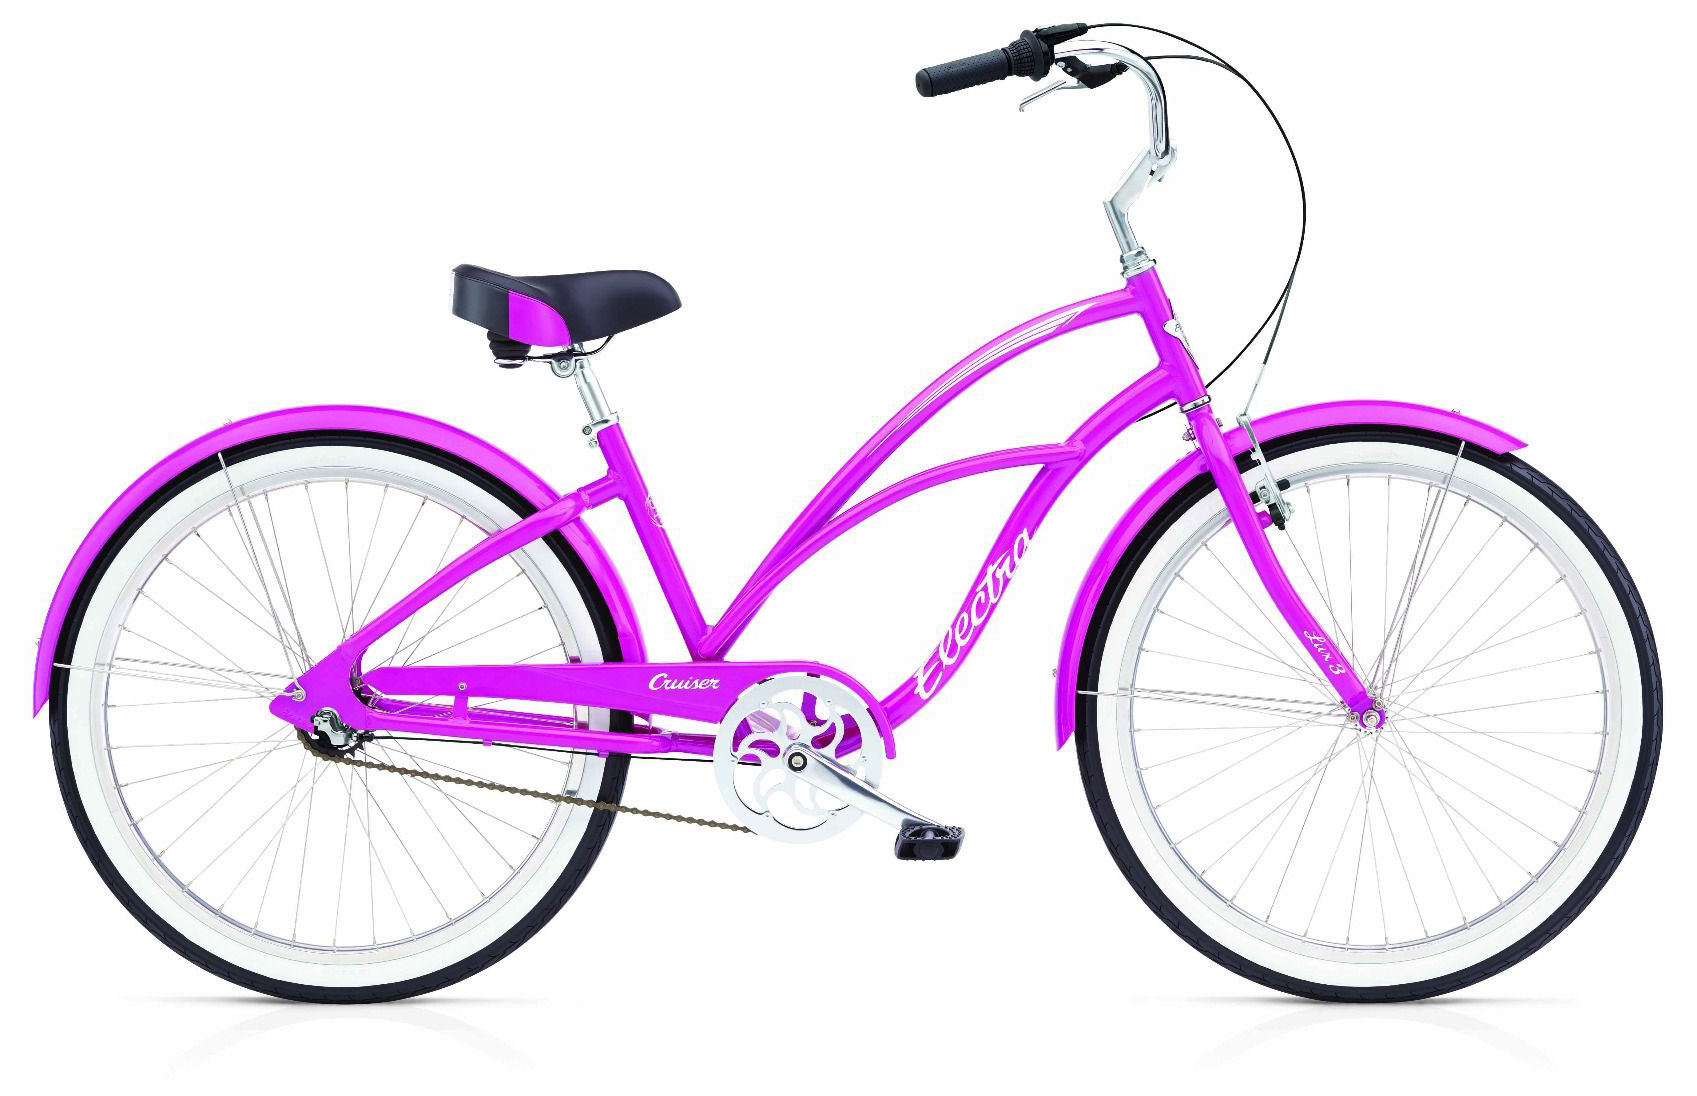  Отзывы о Женском велосипеде Electra Cruiser Lux 3i 2019